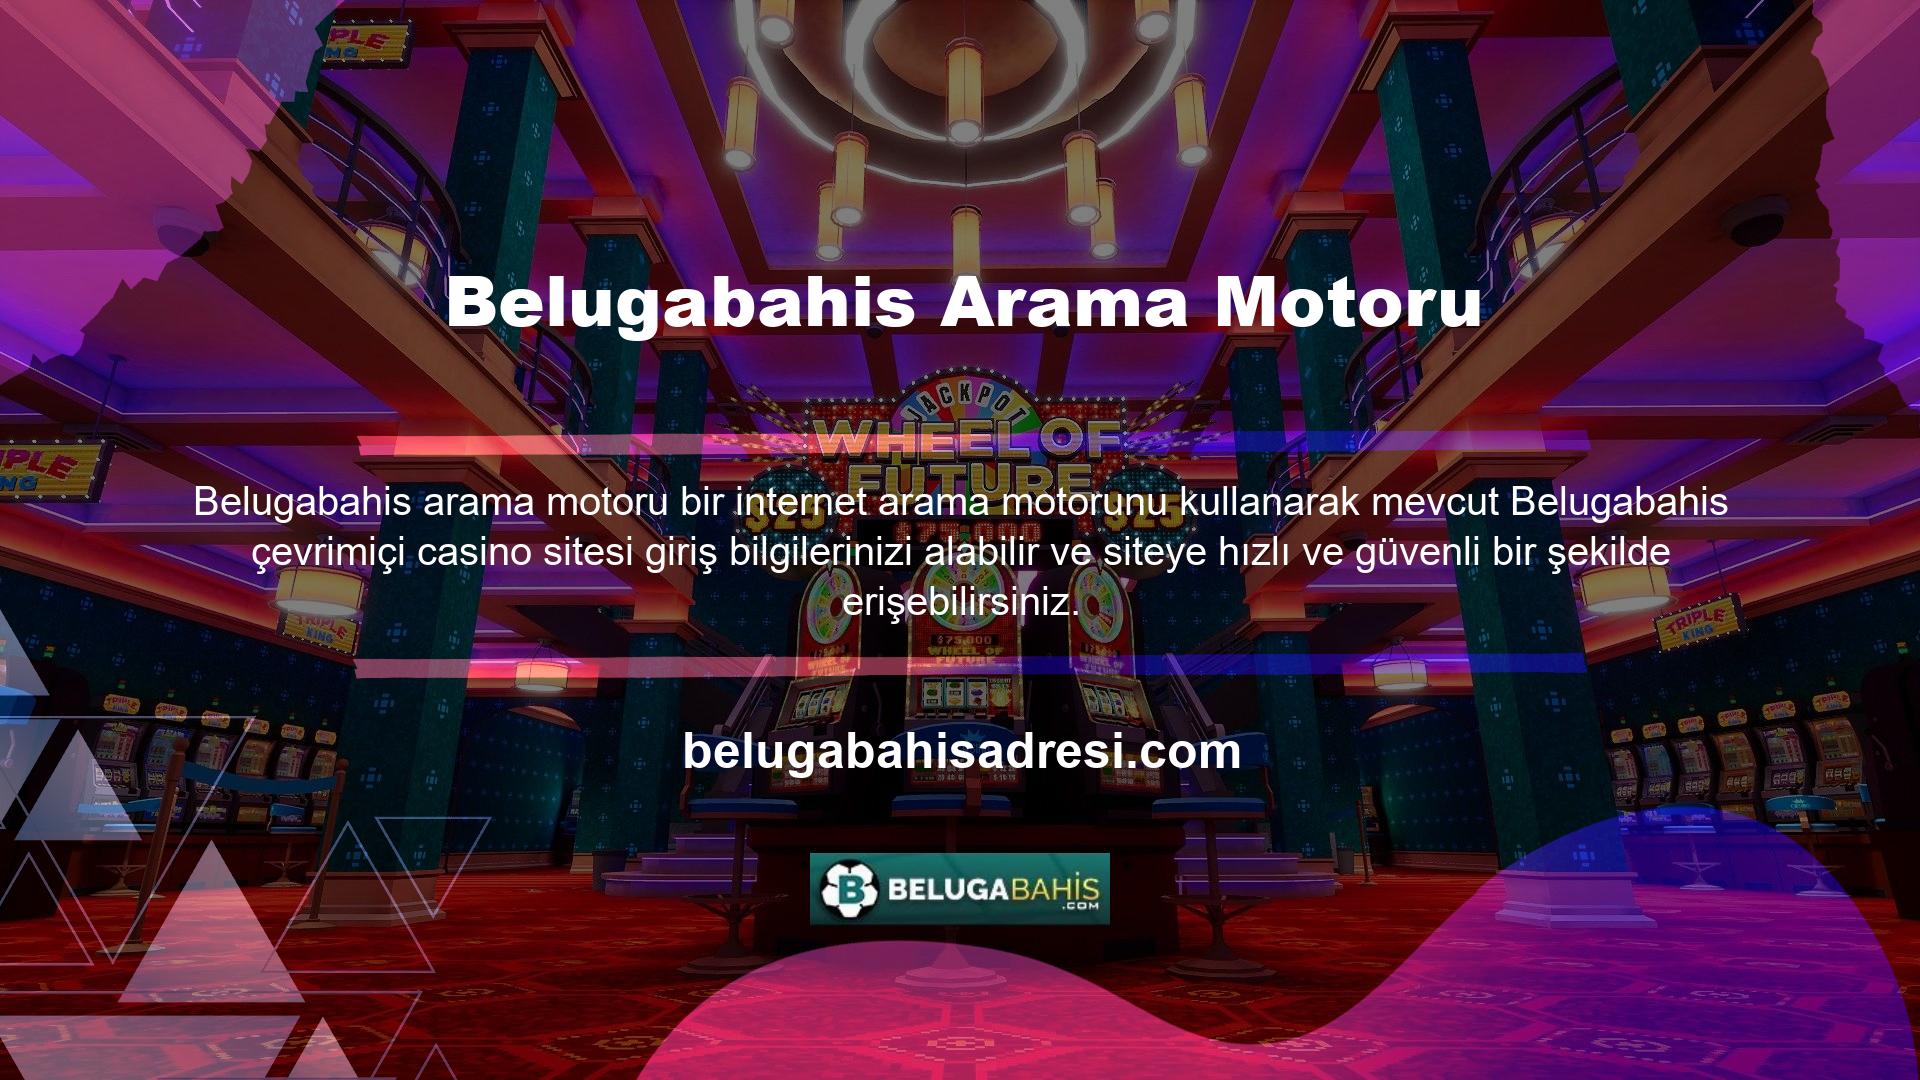 Belugabahis web sitesi sürekli olarak yenilikçi ve mükemmel hizmet sunmaktadır